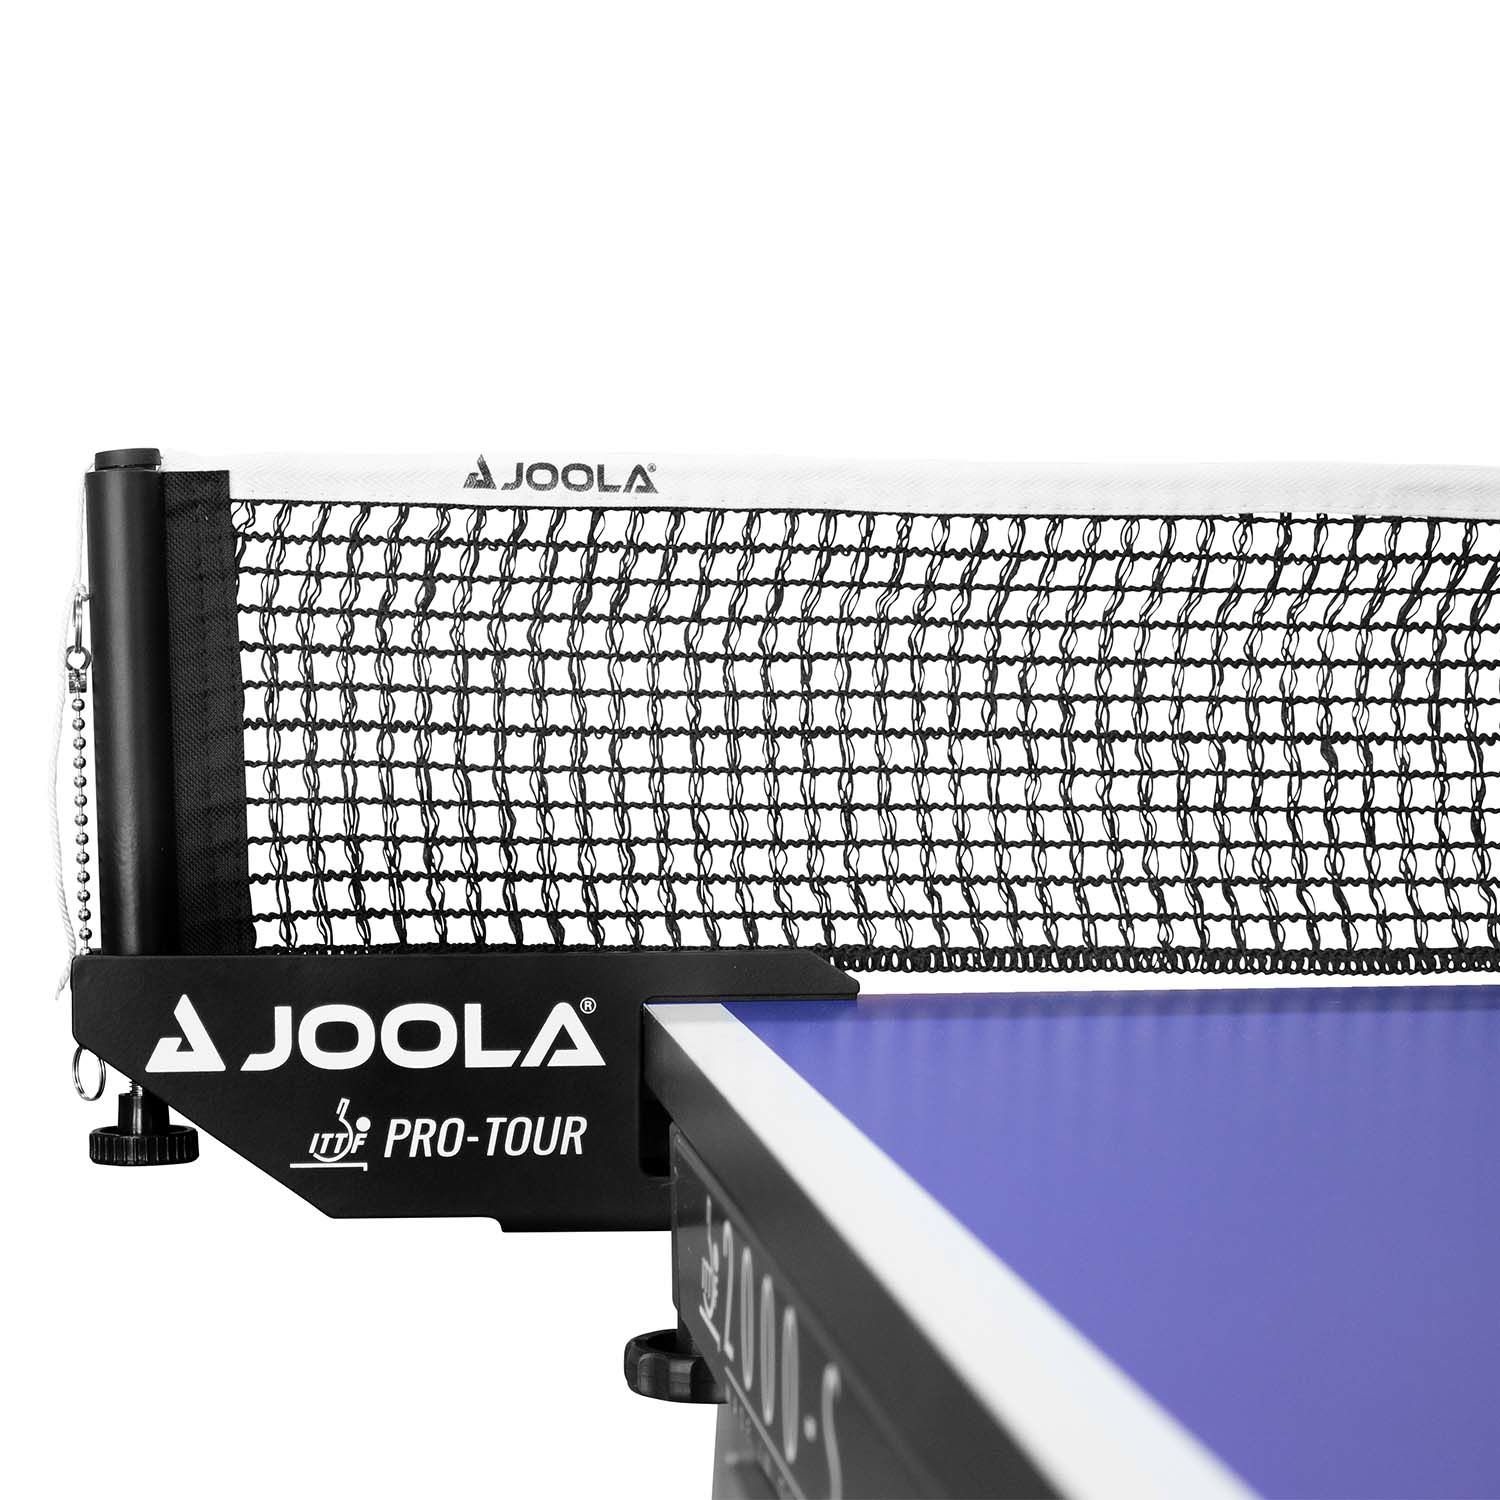 JOOLA PRO TOUR - ITTF